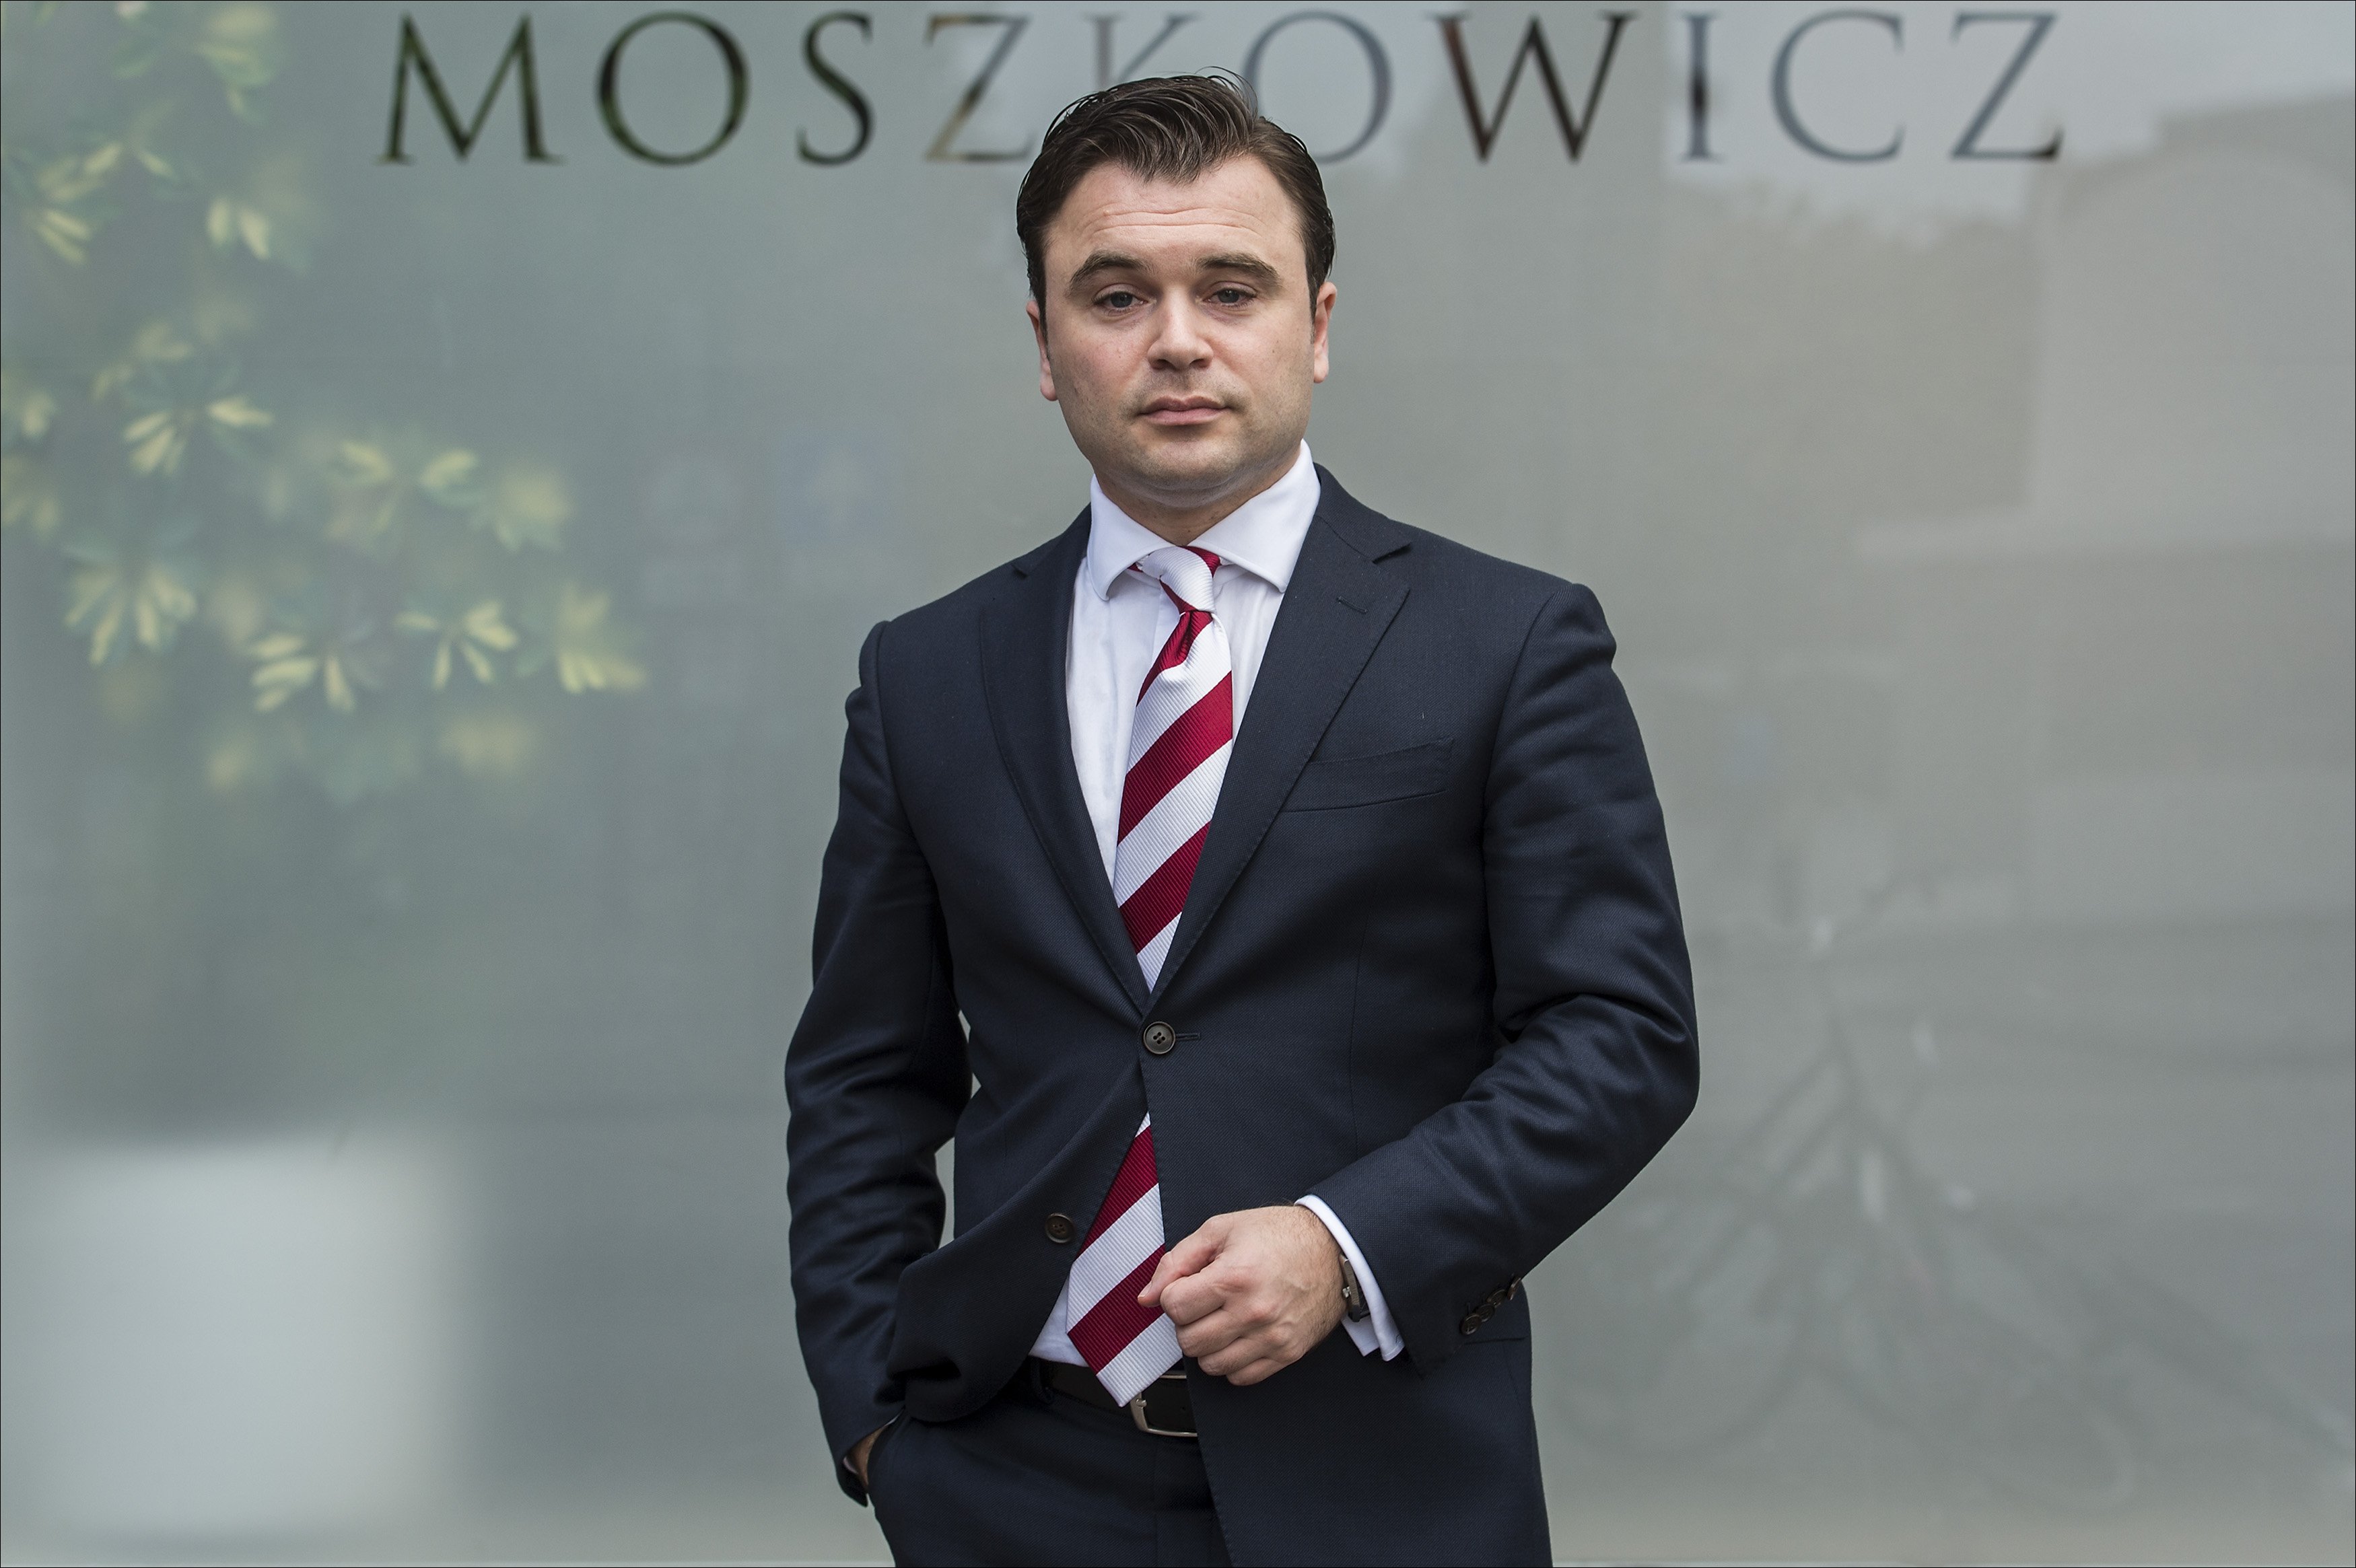 2014-10-21 16:15:53 UTRECHT - Portret van Yehudi Moszkowicz, de jongste advocaat uit het bekende advocatengeslacht. ANP ERIK VAN 'T WOUD